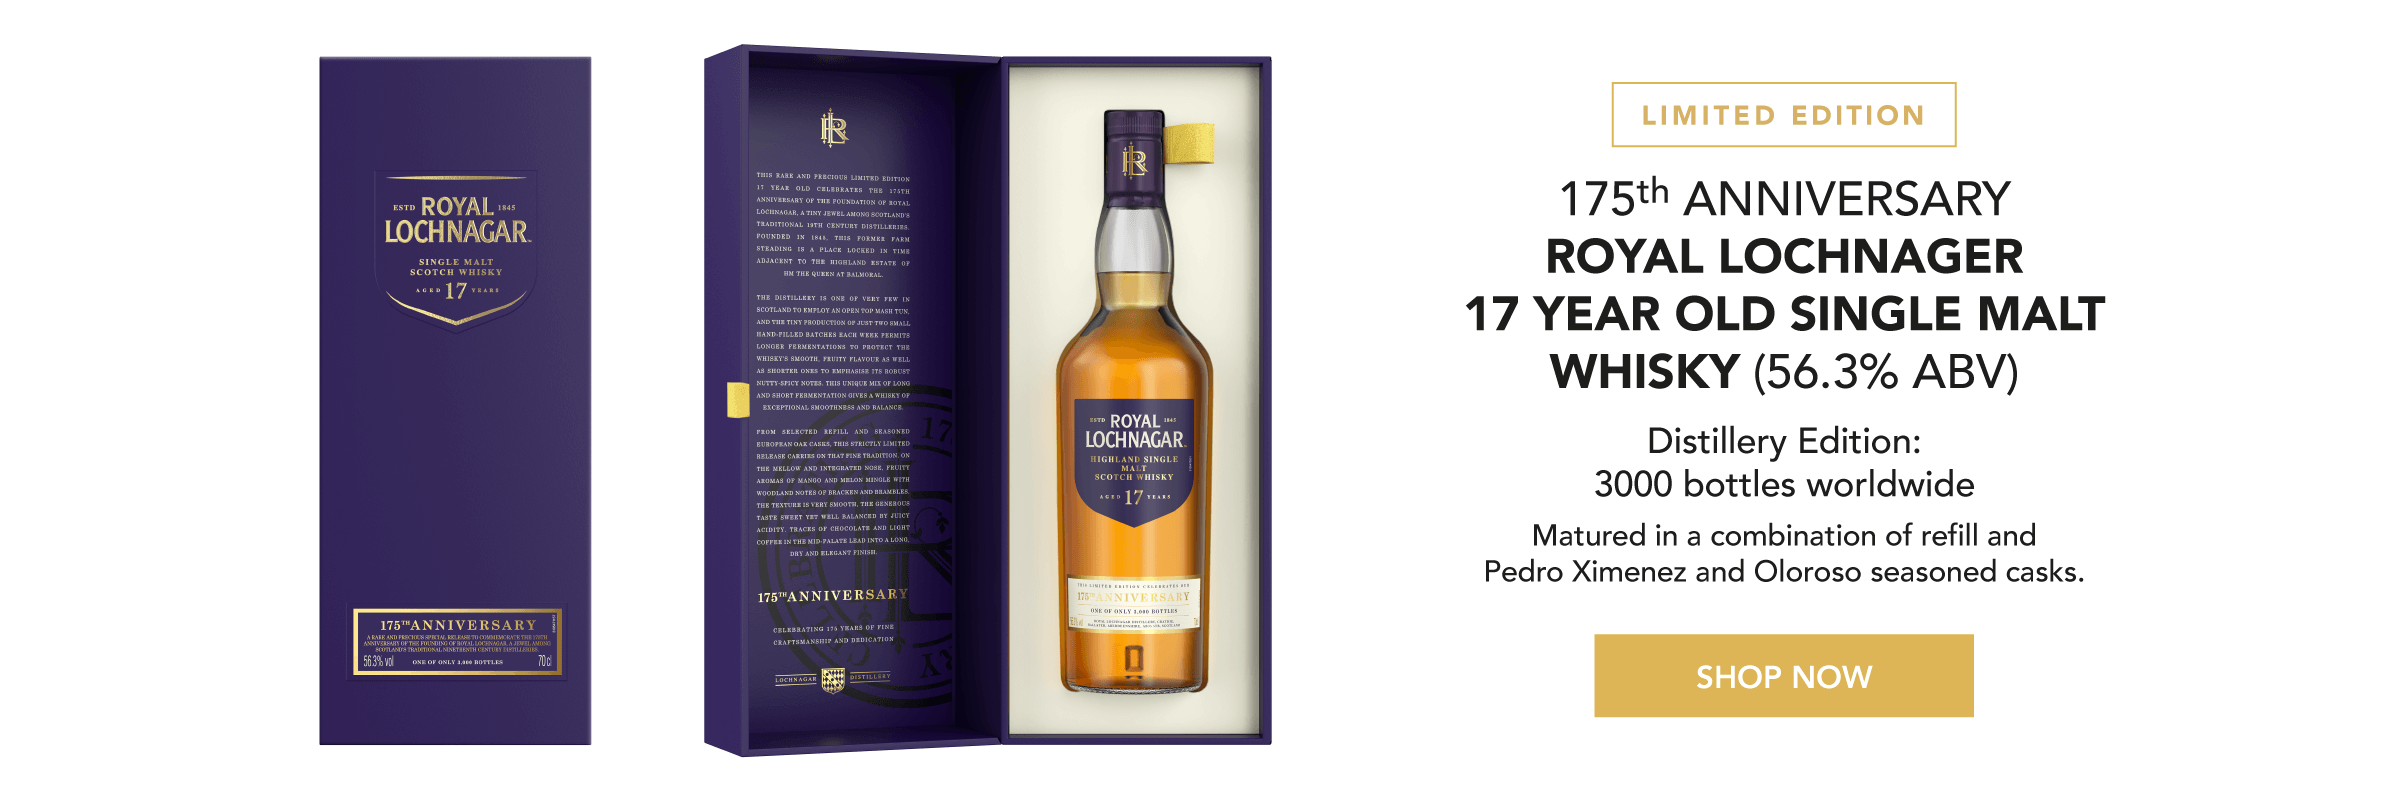 Limited Edition - Royal Lochnagar 17 Year Old Single Malt Whisky